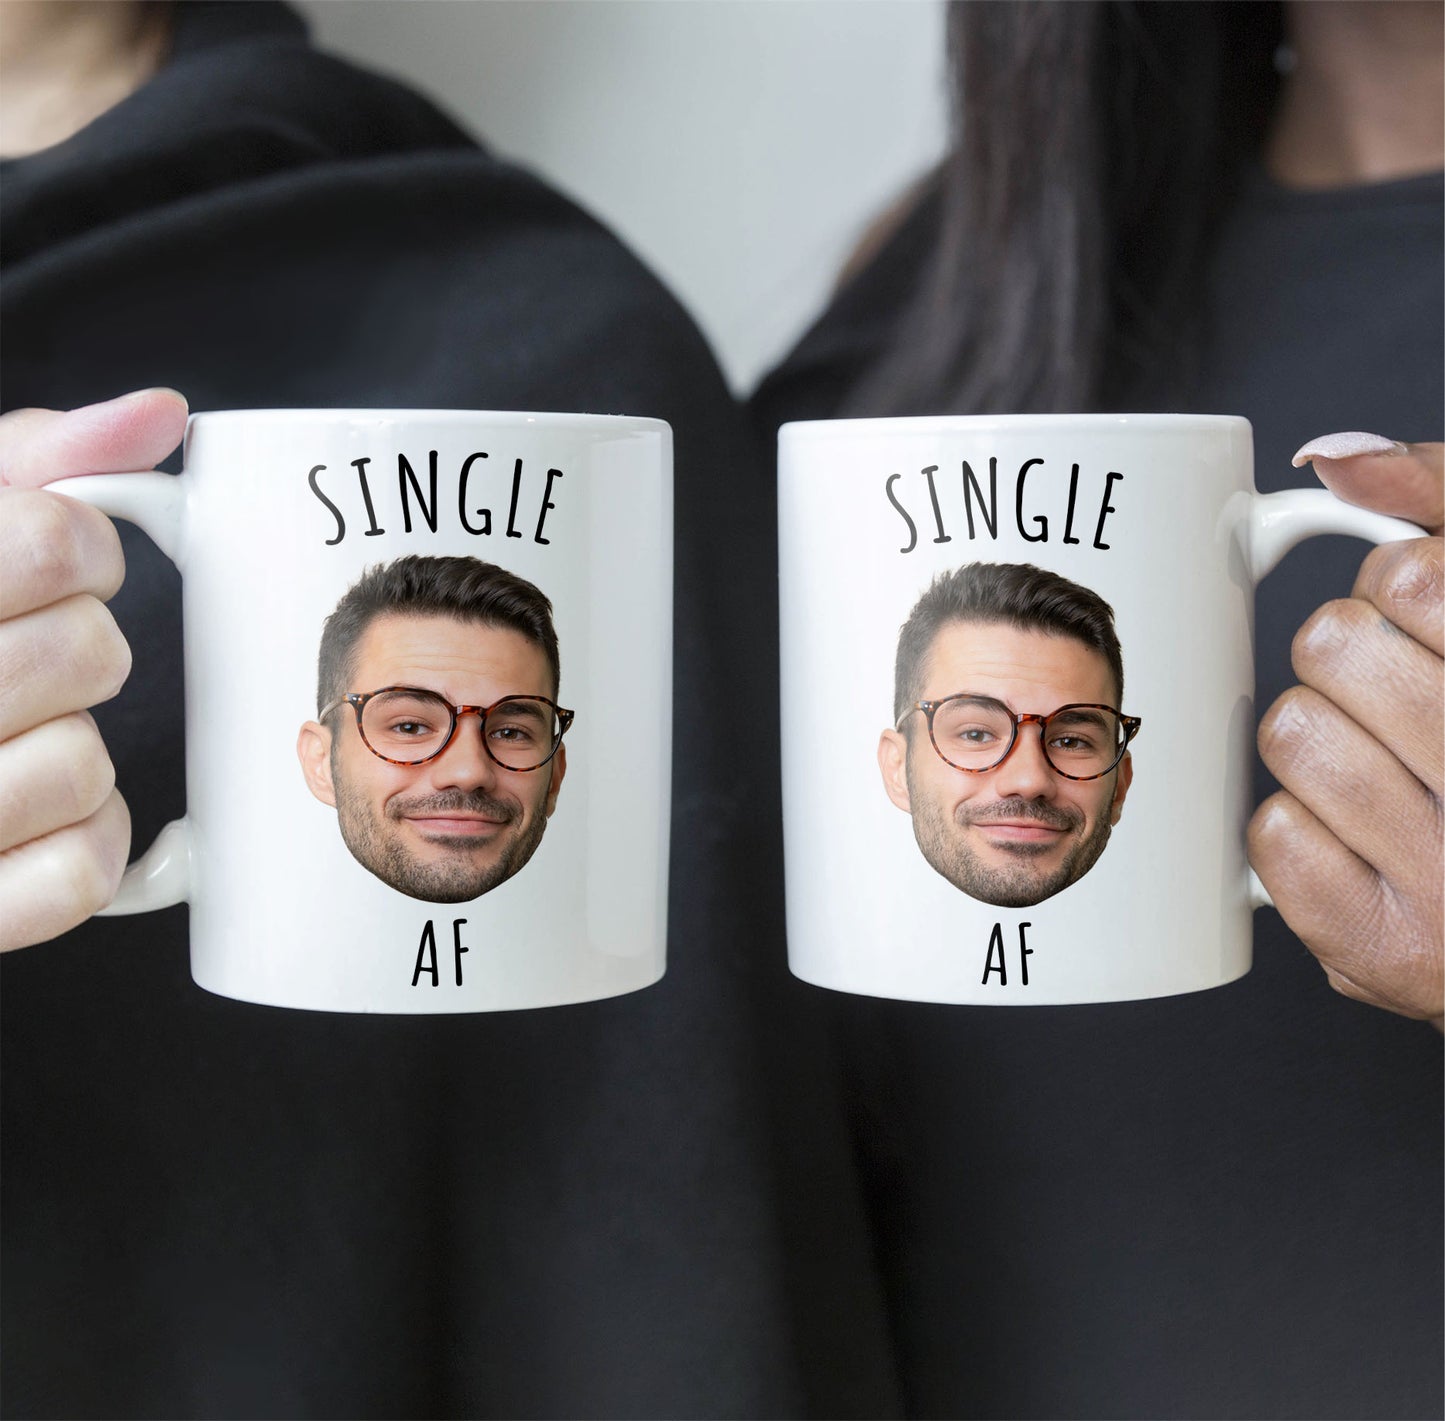 Single Af - Personalized Photo Mug